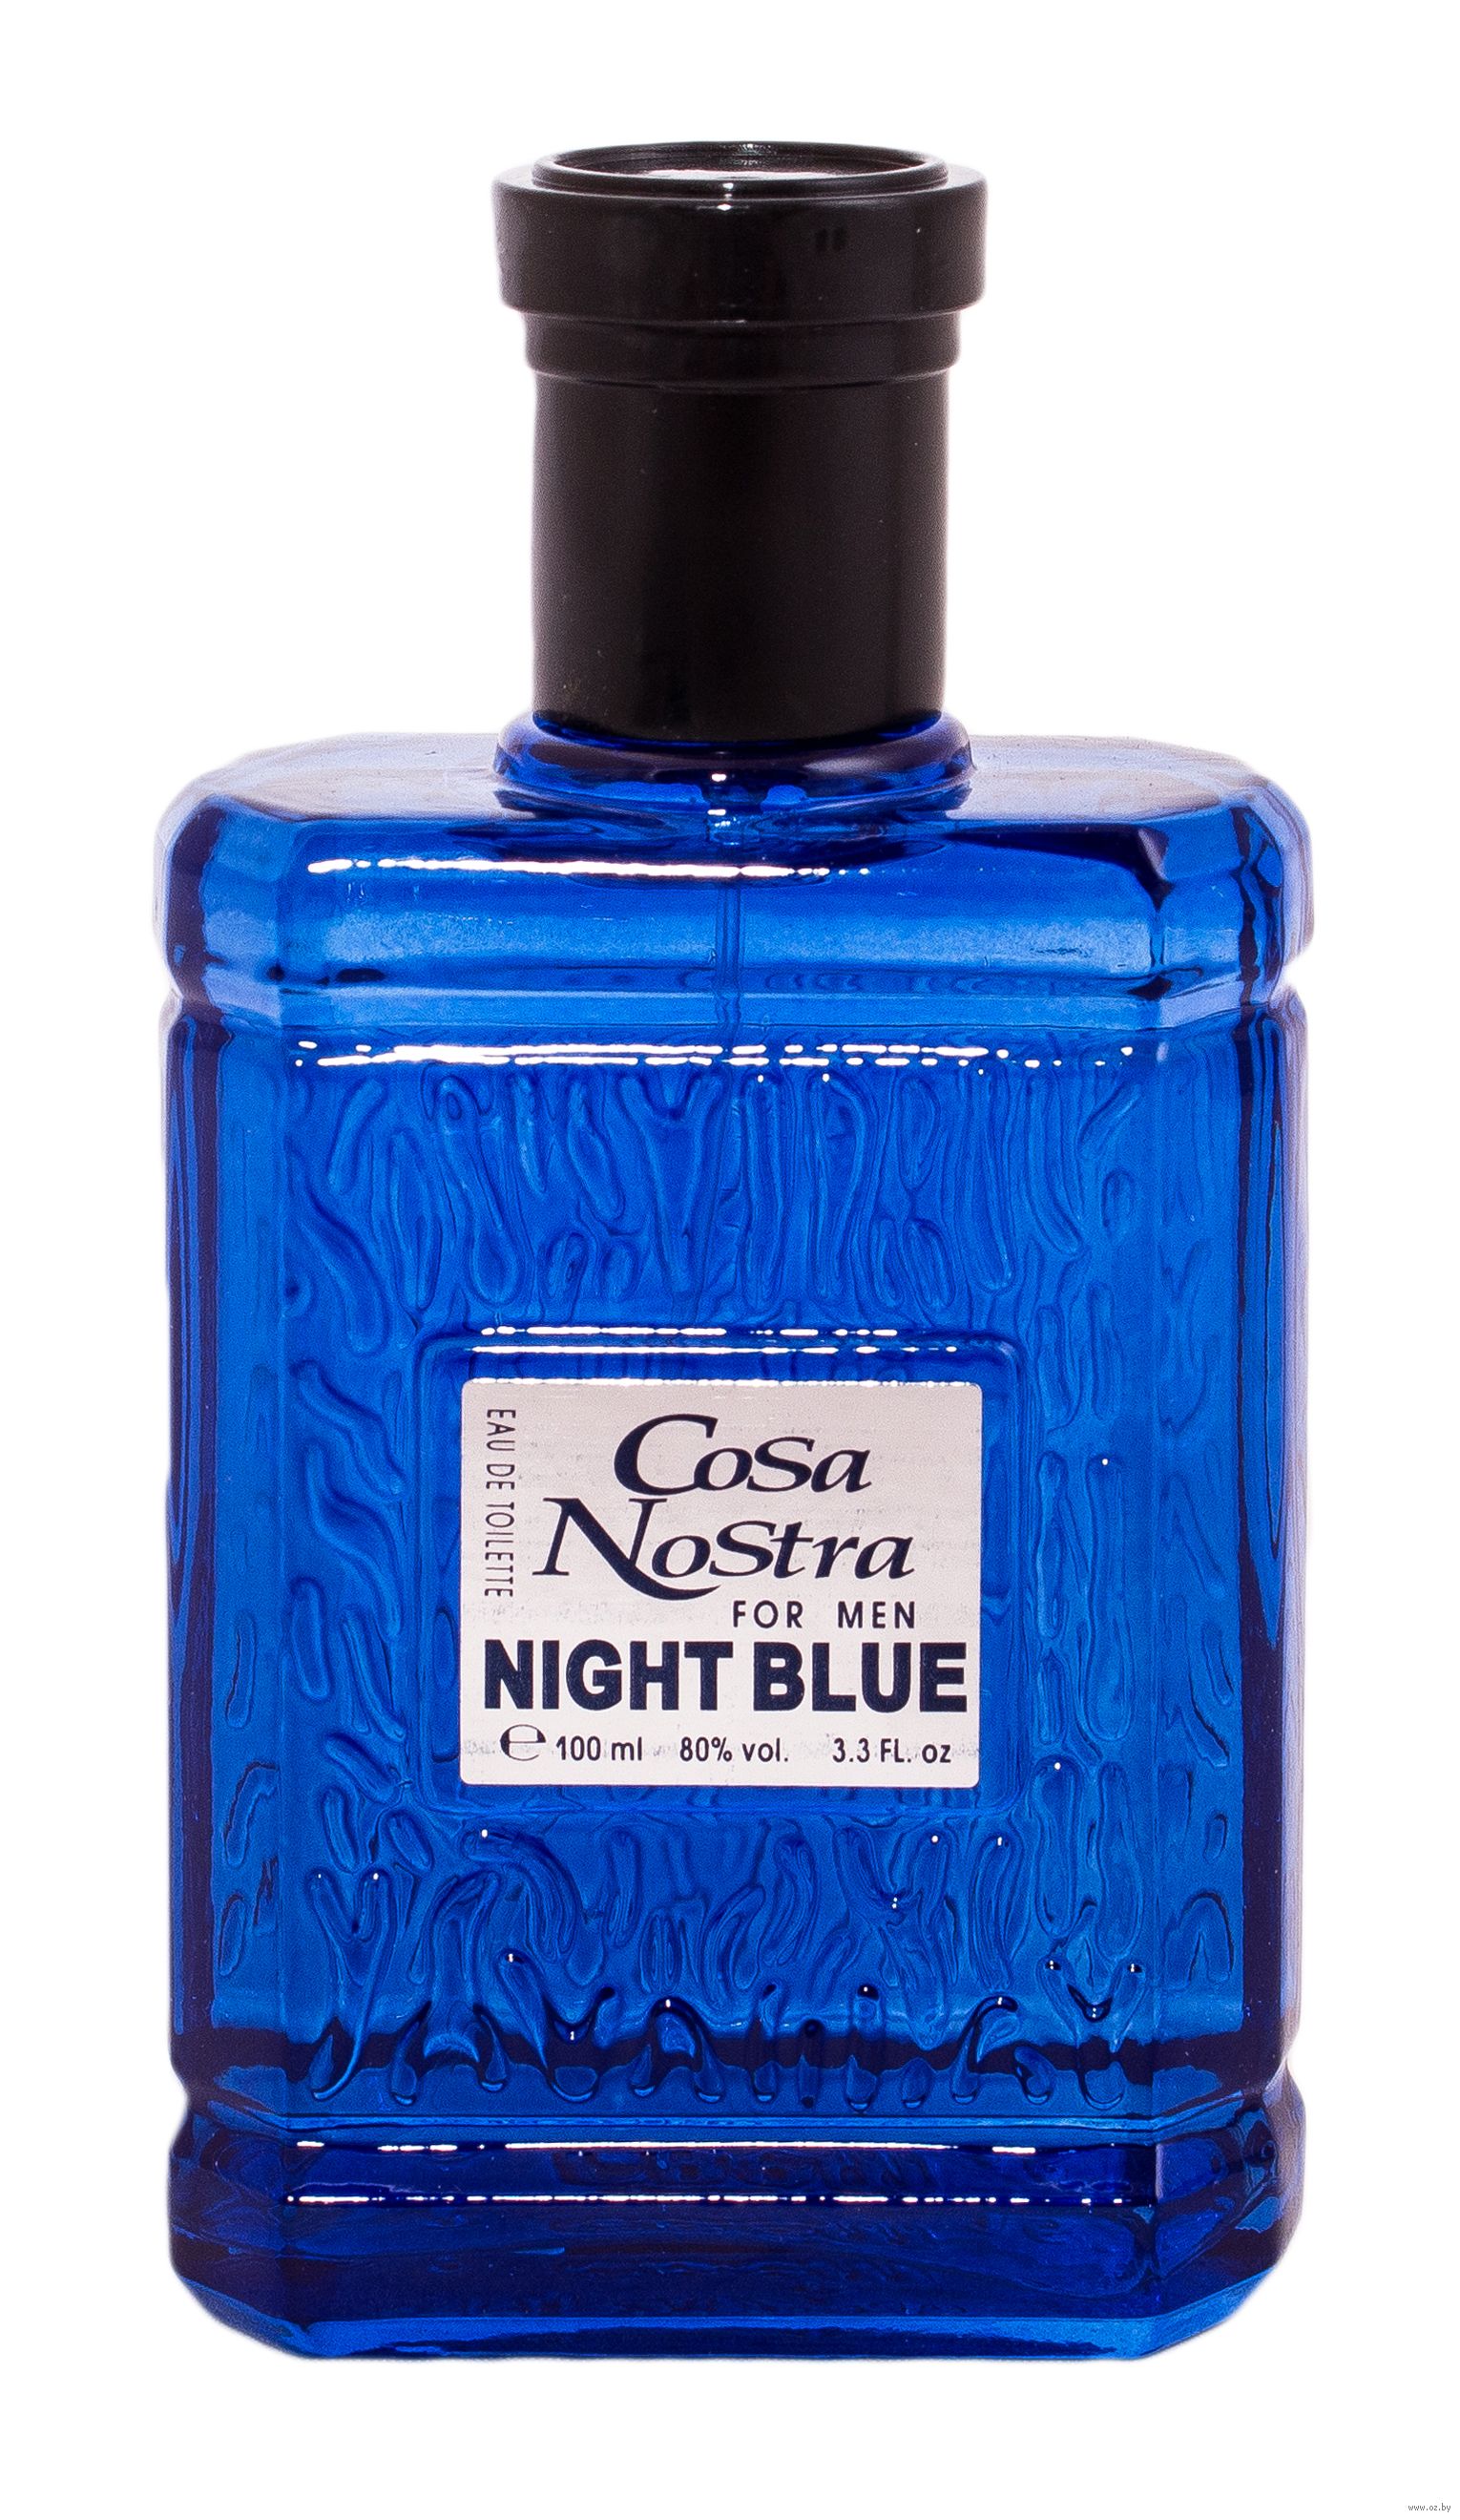 Туалетная вода для мужчин "Cosa Nostra Night Blue" (100 мл) Paris Line Parfums : купить в интернет-магазине — OZ.by